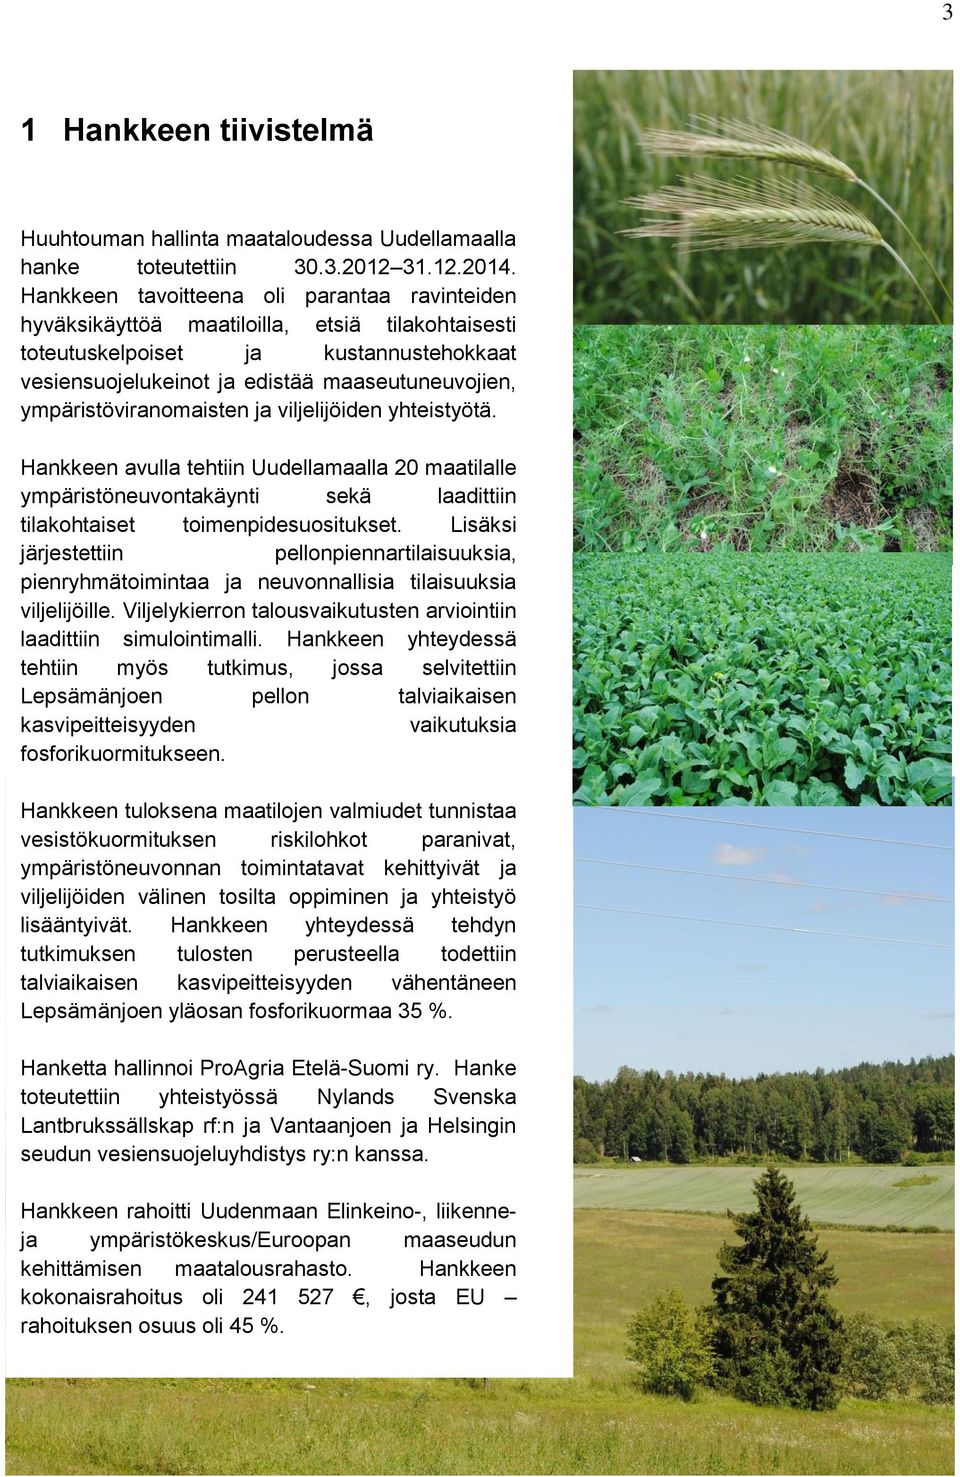 ympäristöviranomaisten ja viljelijöiden yhteistyötä. Hankkeen avulla tehtiin Uudellamaalla 20 maatilalle ympäristöneuvontakäynti sekä laadittiin tilakohtaiset toimenpidesuositukset.